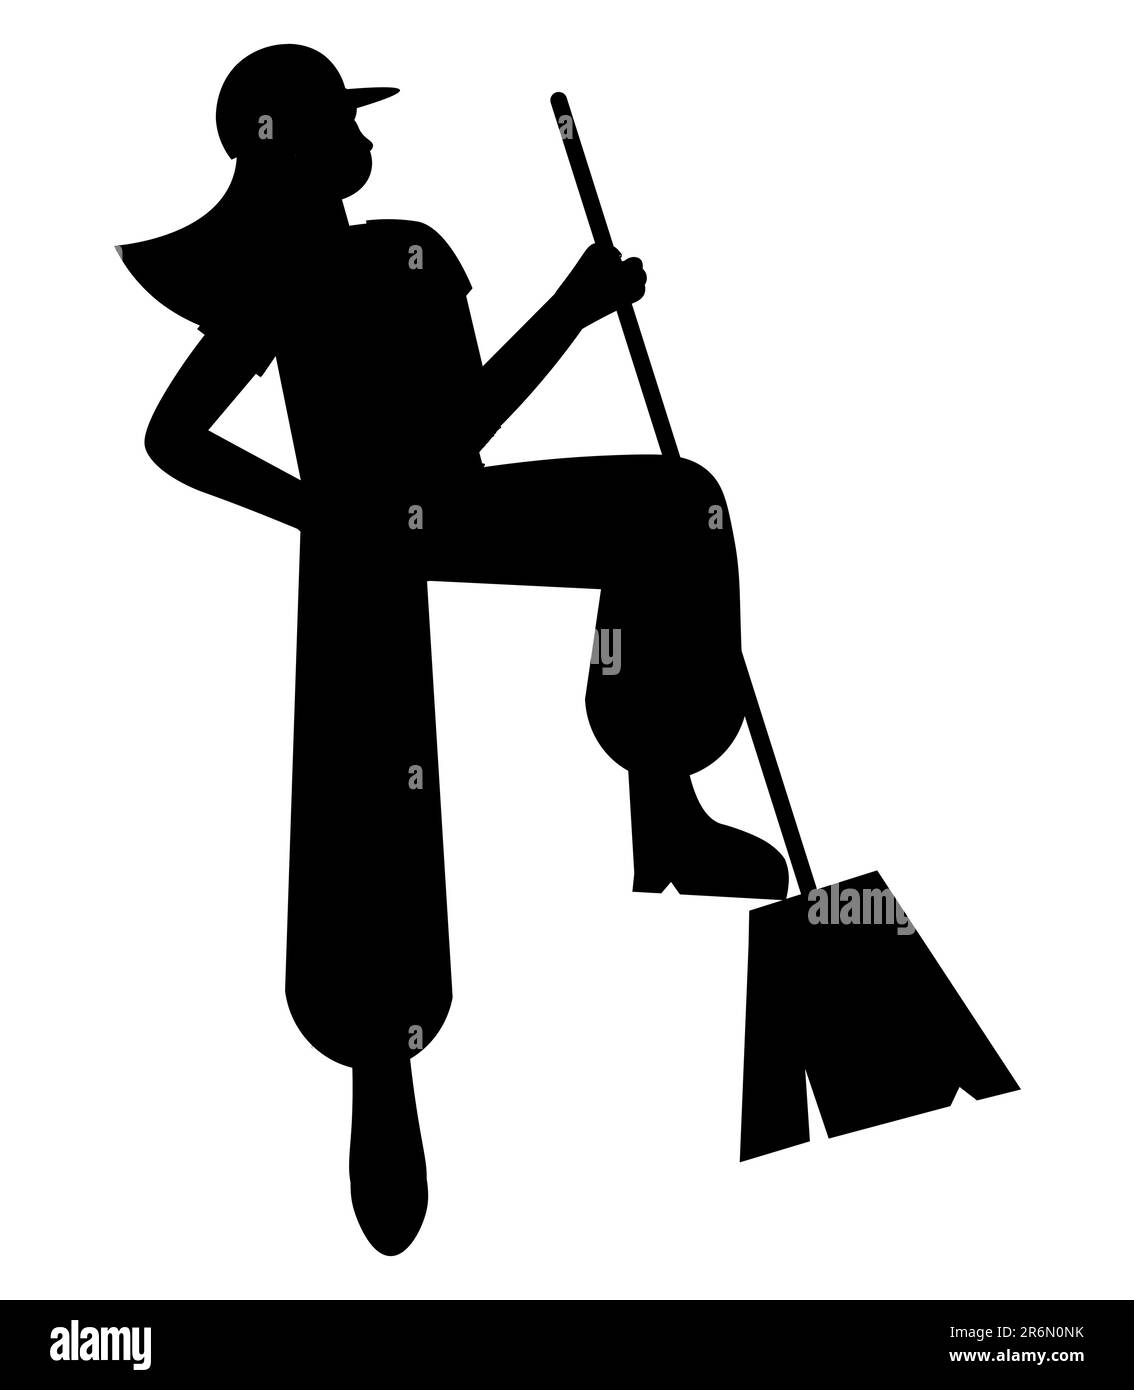 Silhouette noire d'un balai professionnel féminin portant une casquette, un service de nettoyage, des eps vectoriels Illustration de Vecteur